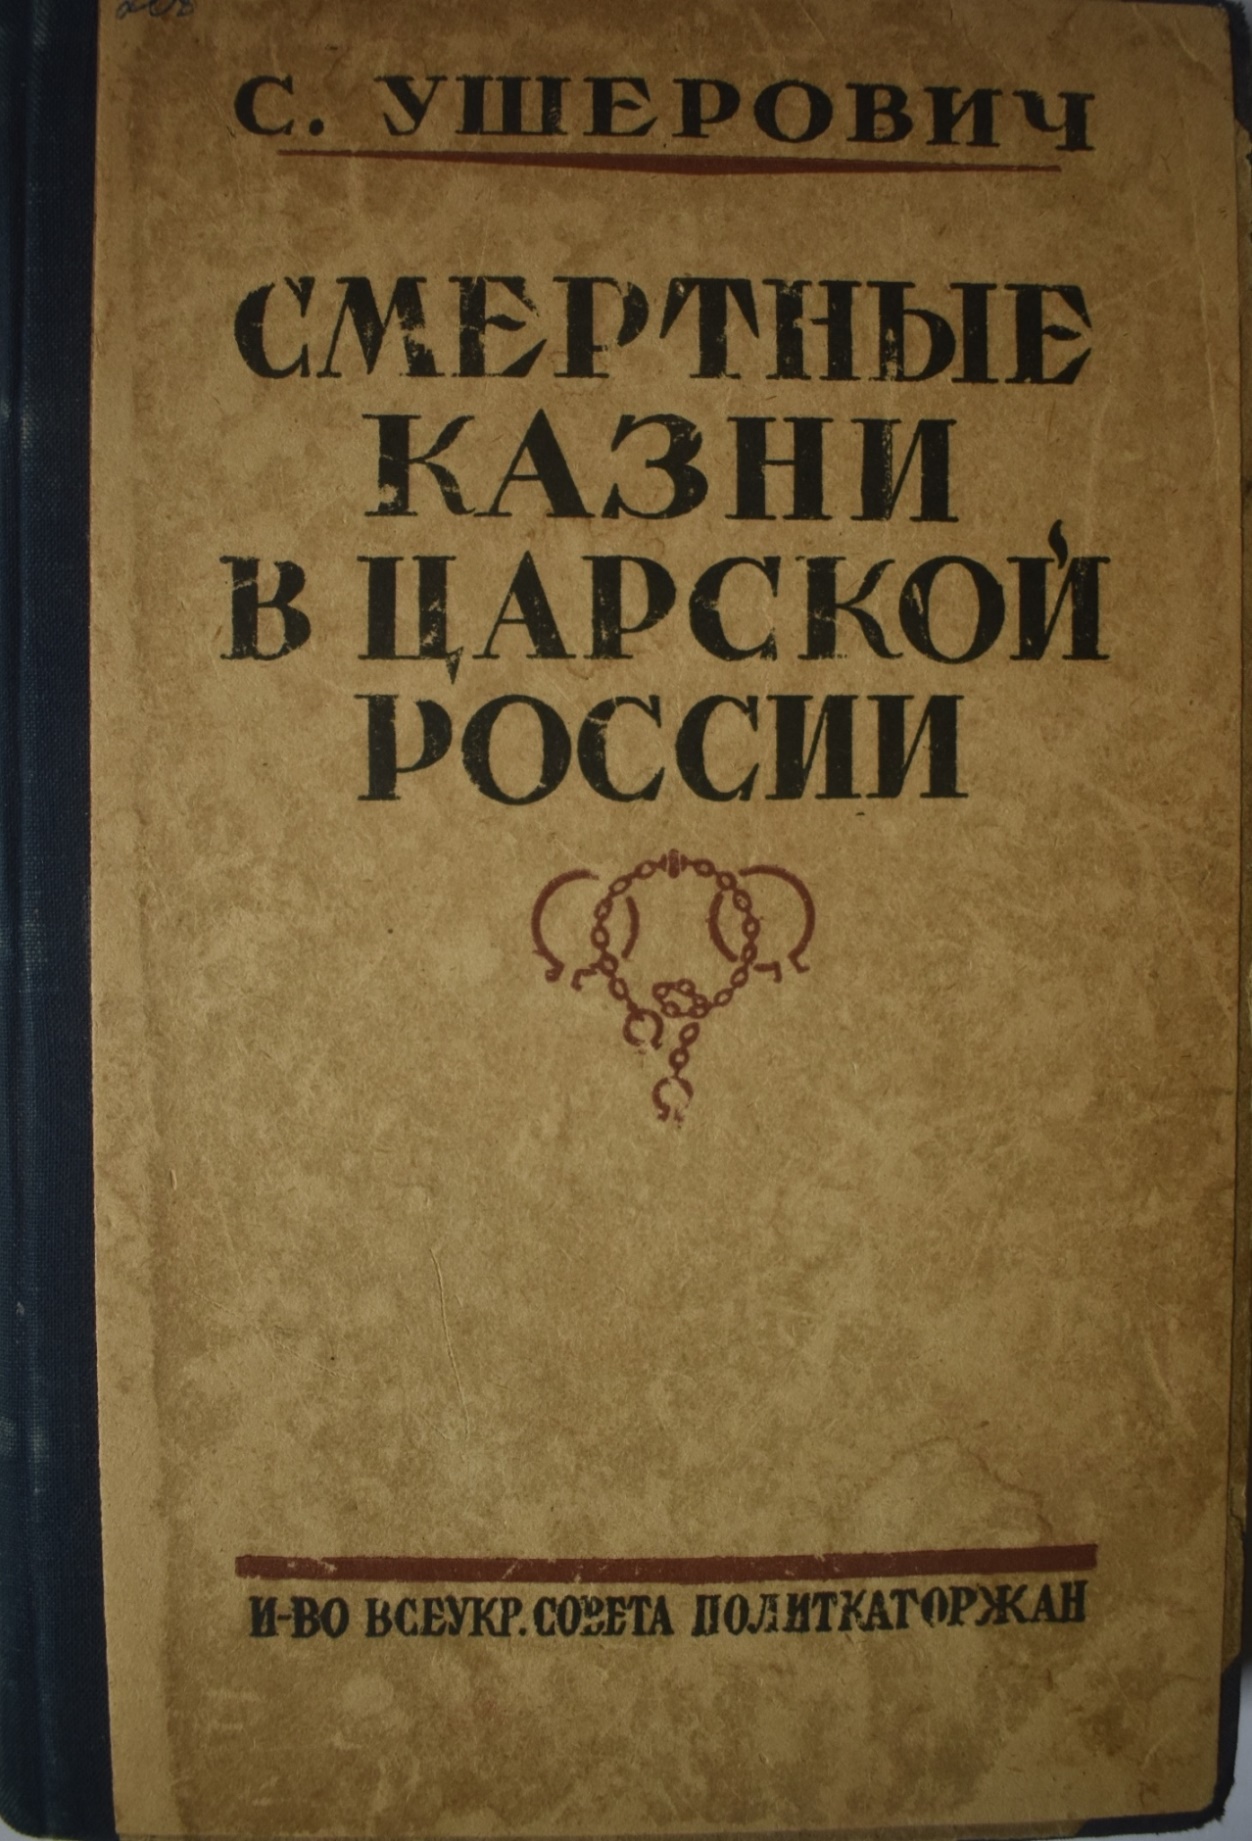 Книга  С.  Ушерович  "Смертные казни в царской России"